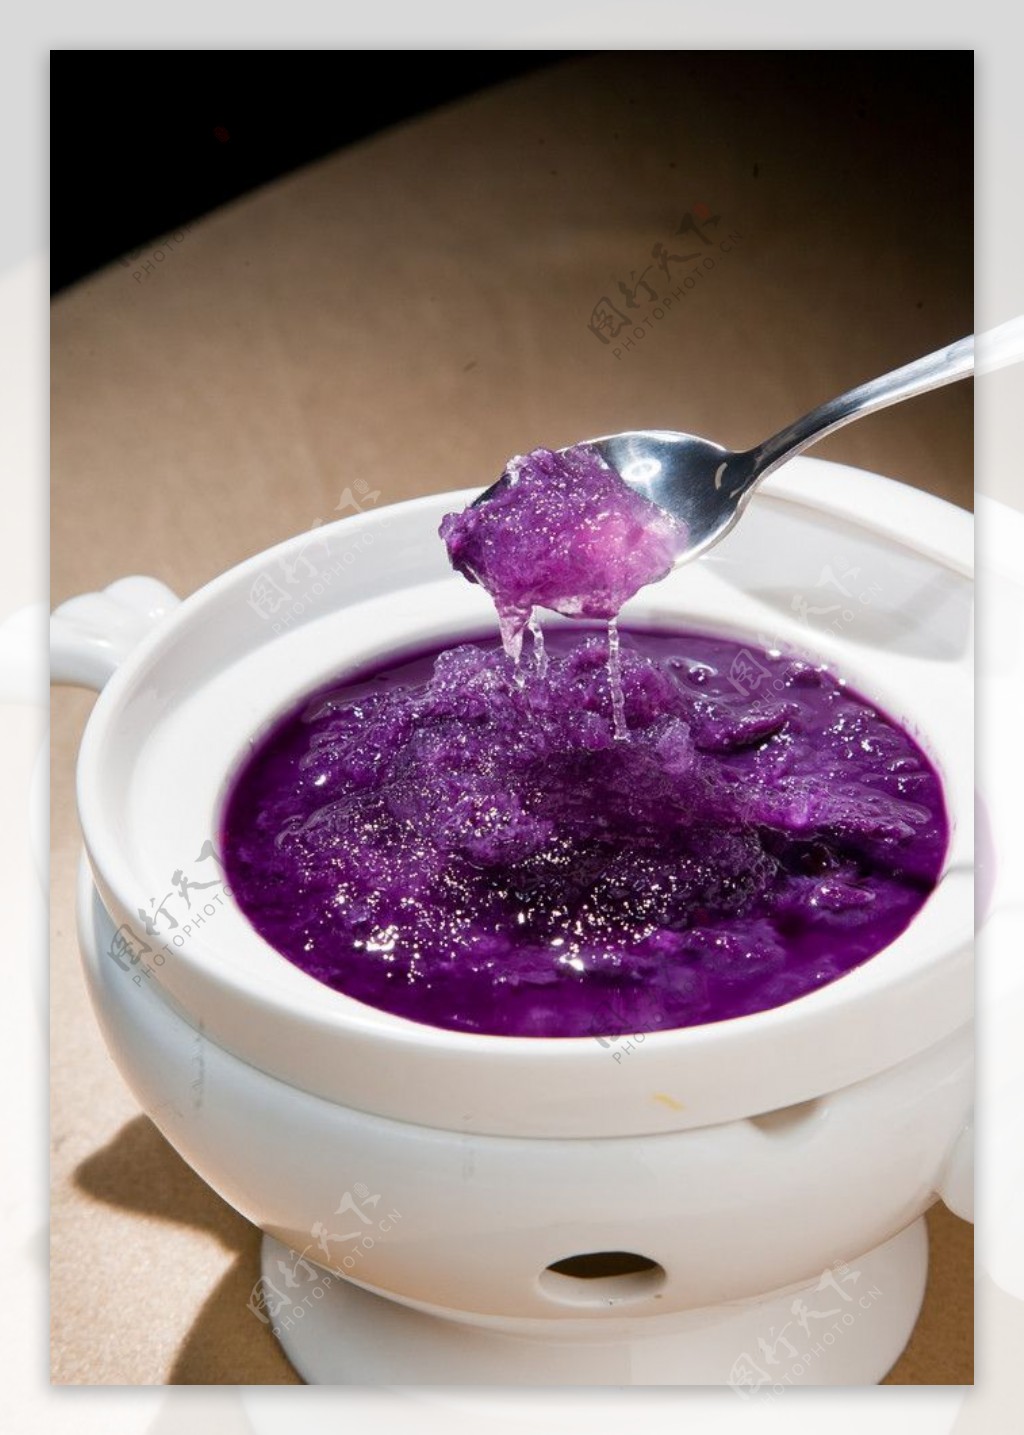 紫薯汁烩燕窝图片